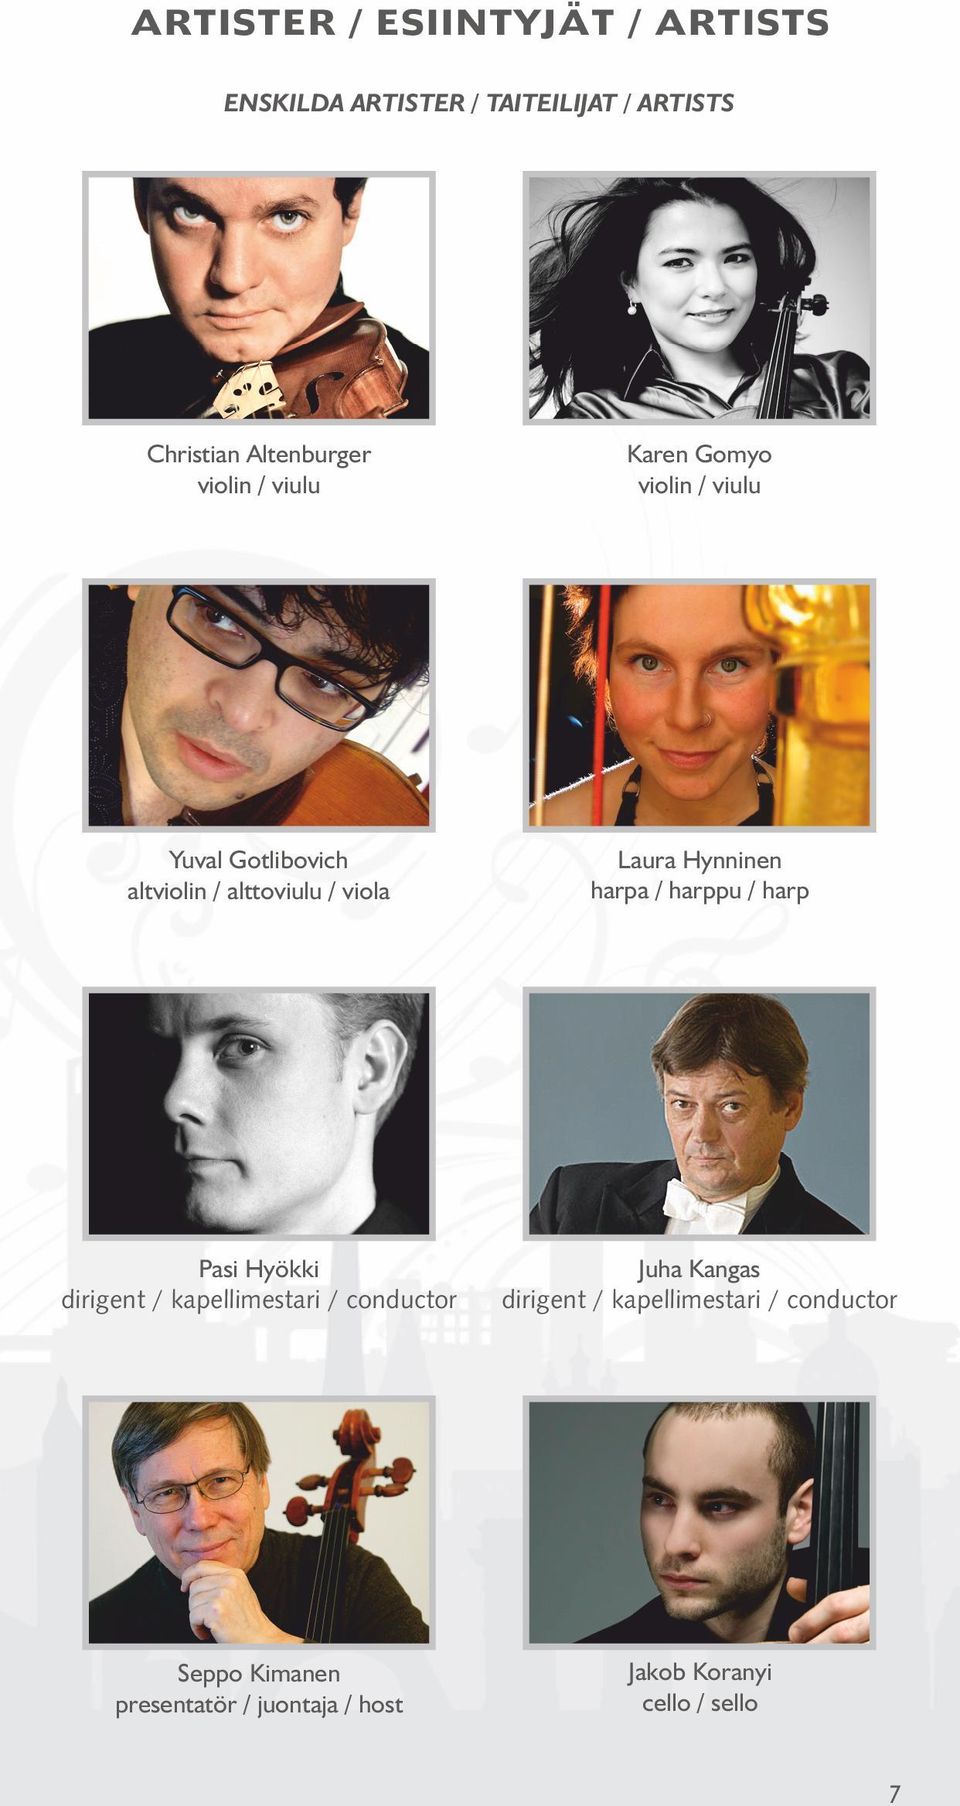 Hynninen harpa / harppu / harp Pasi Hyökki dirigent / kapellimestari / conductor Juha Kangas